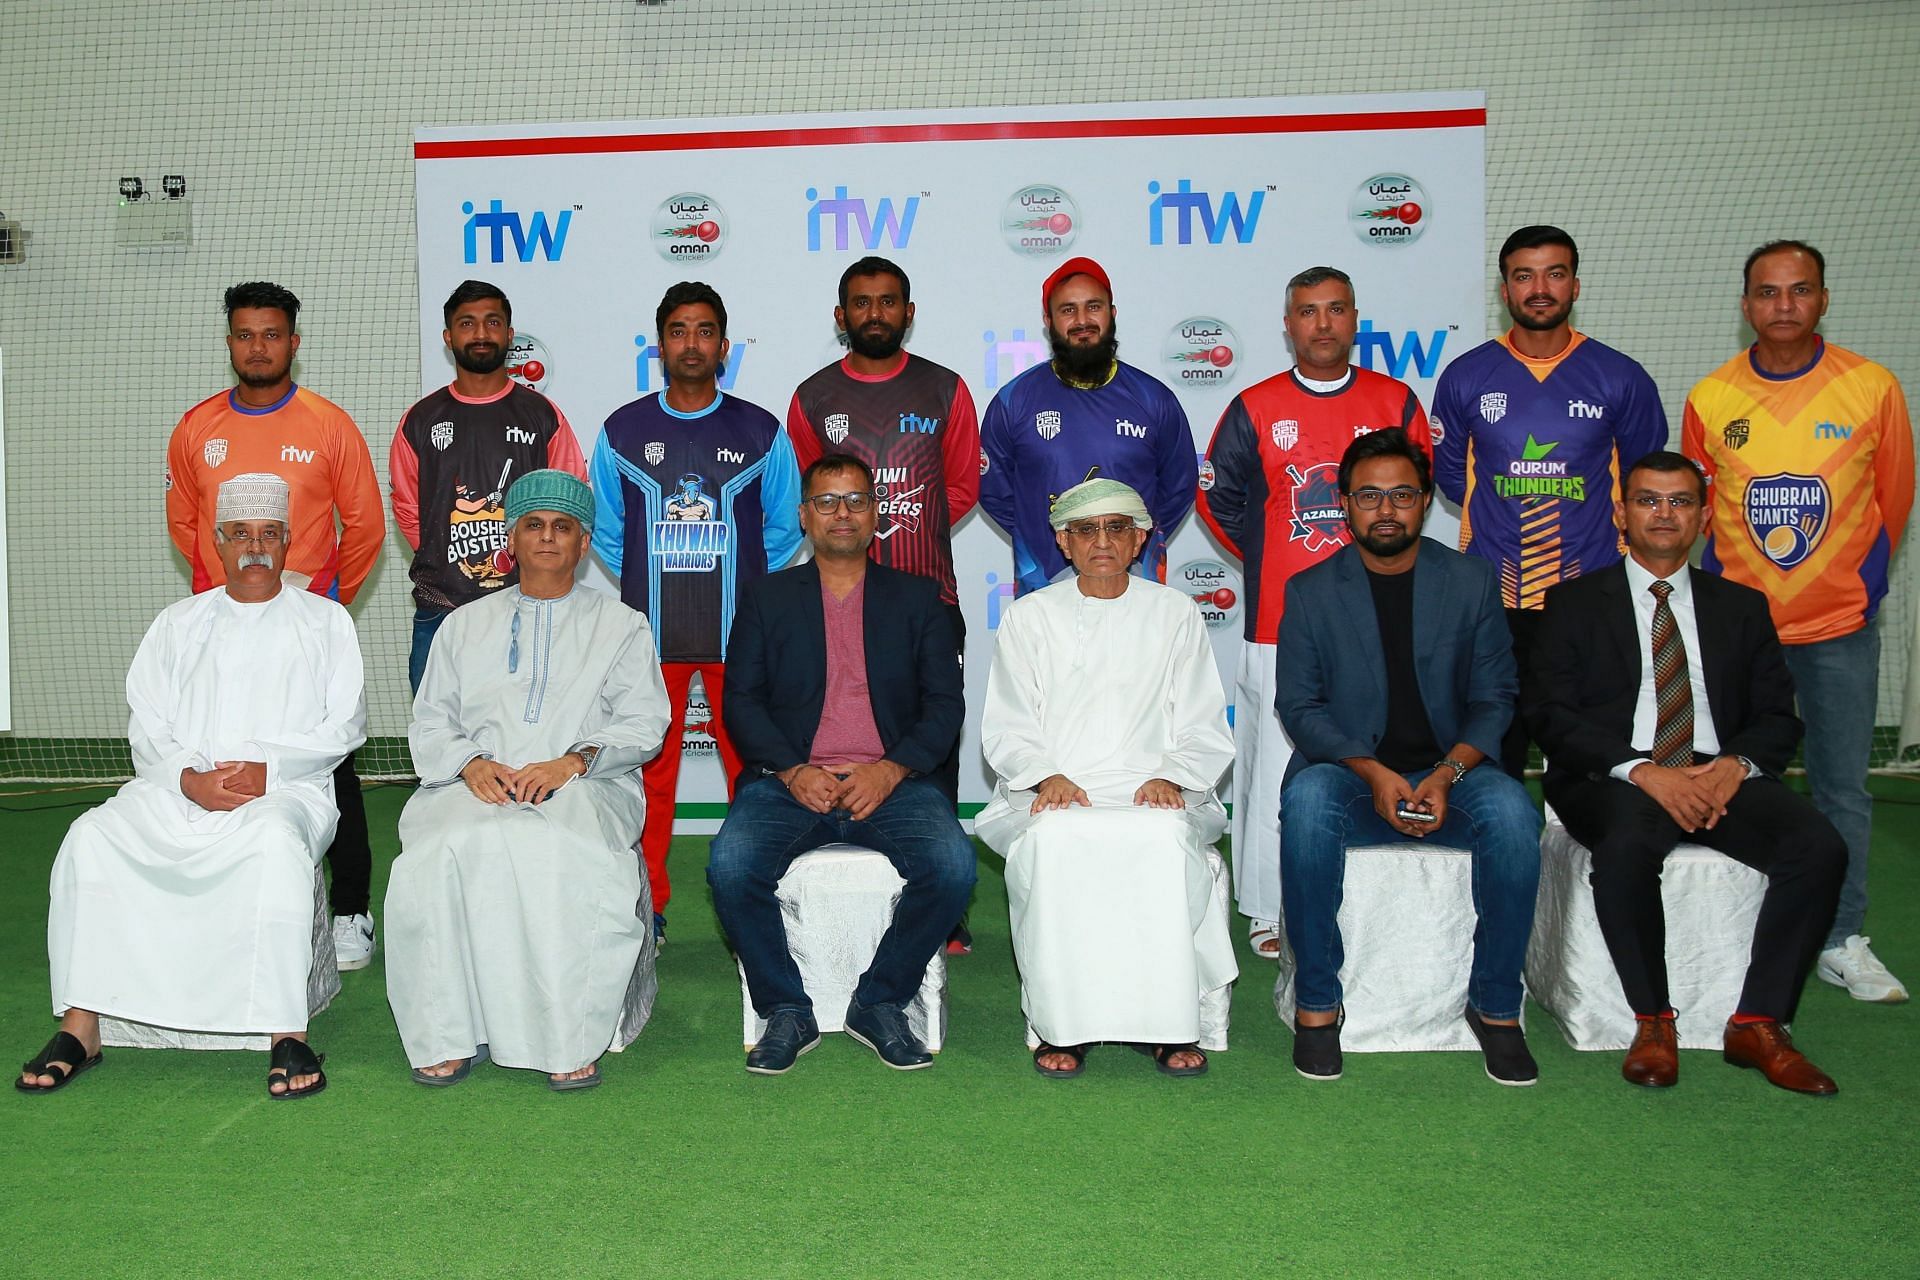 Image Courtesy: Oman Cricket Twitter